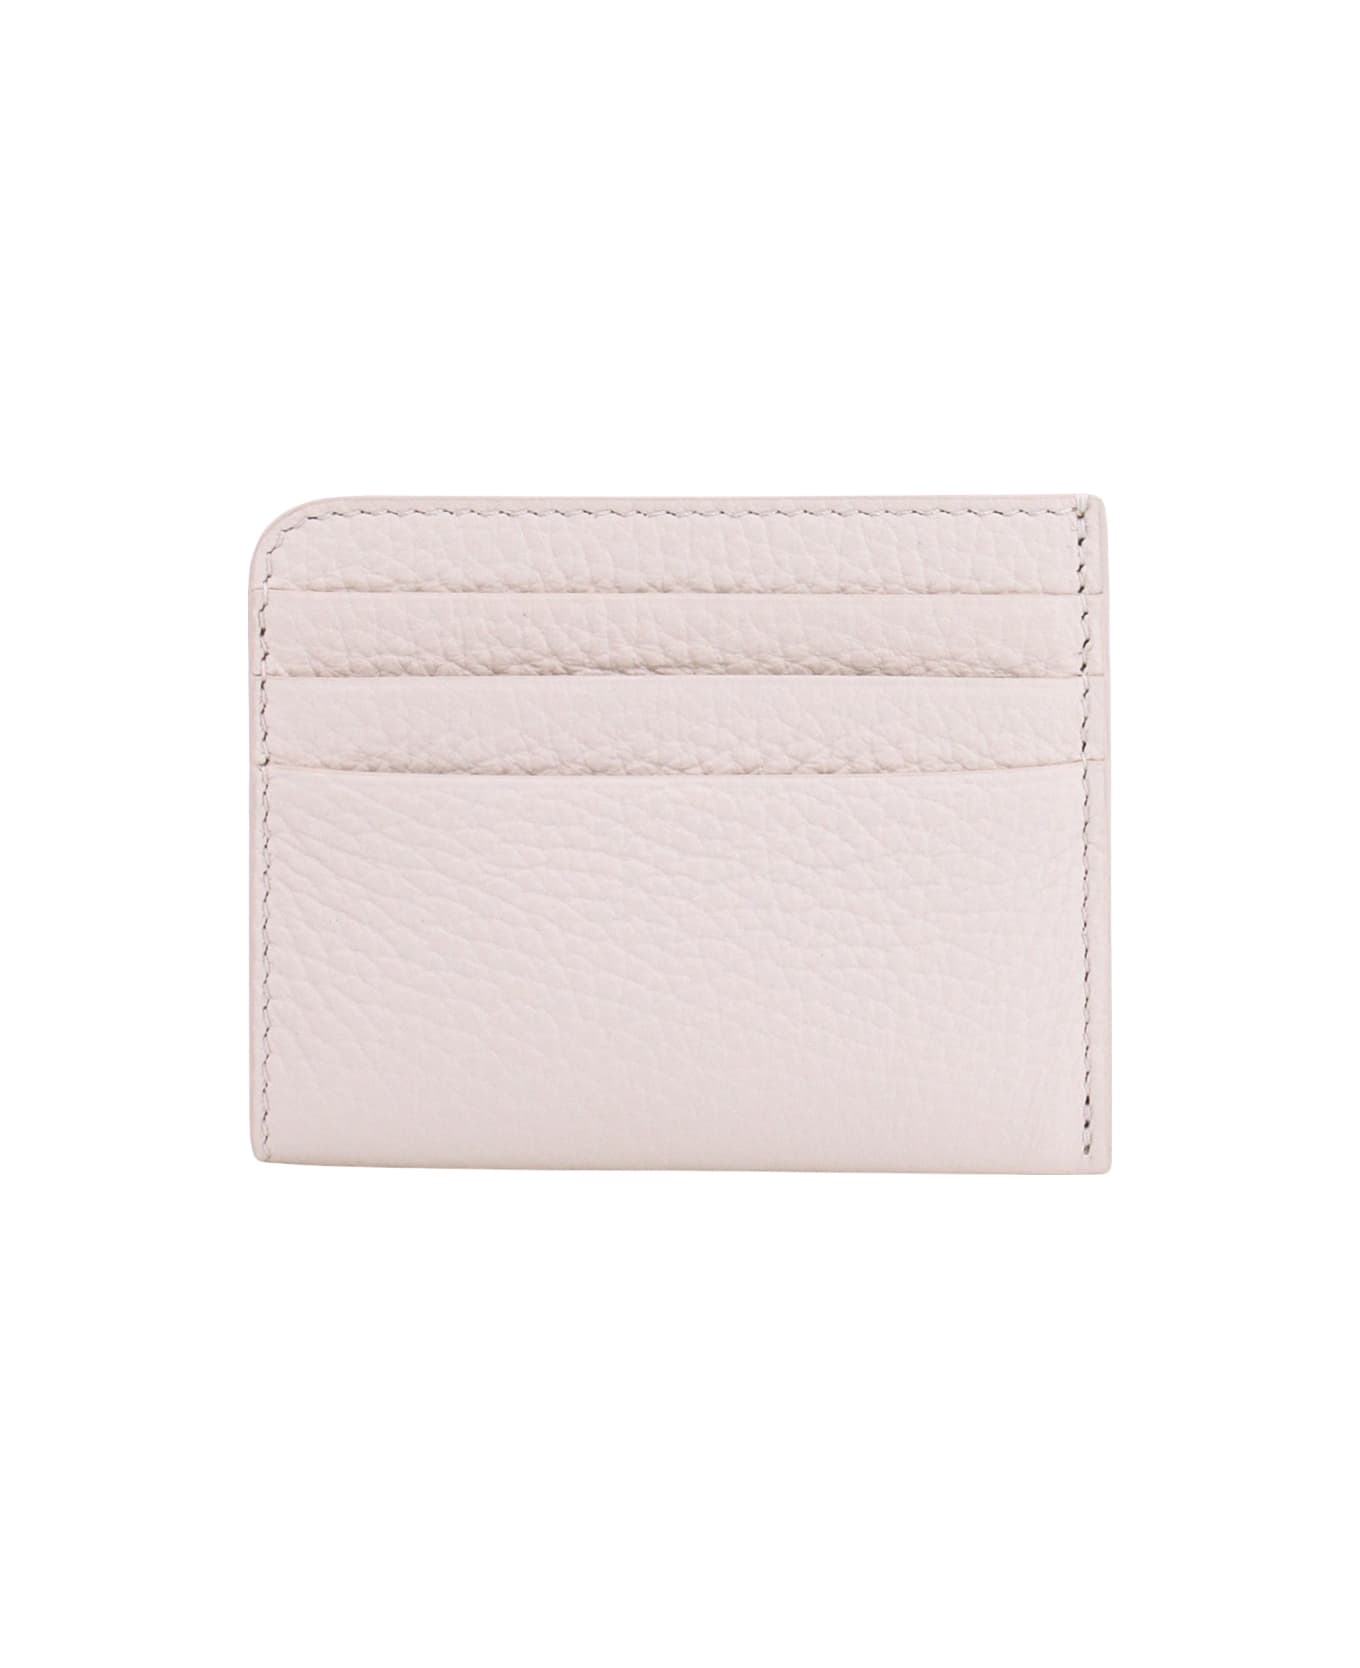 Maison Margiela Leather Credit Card Holder - White